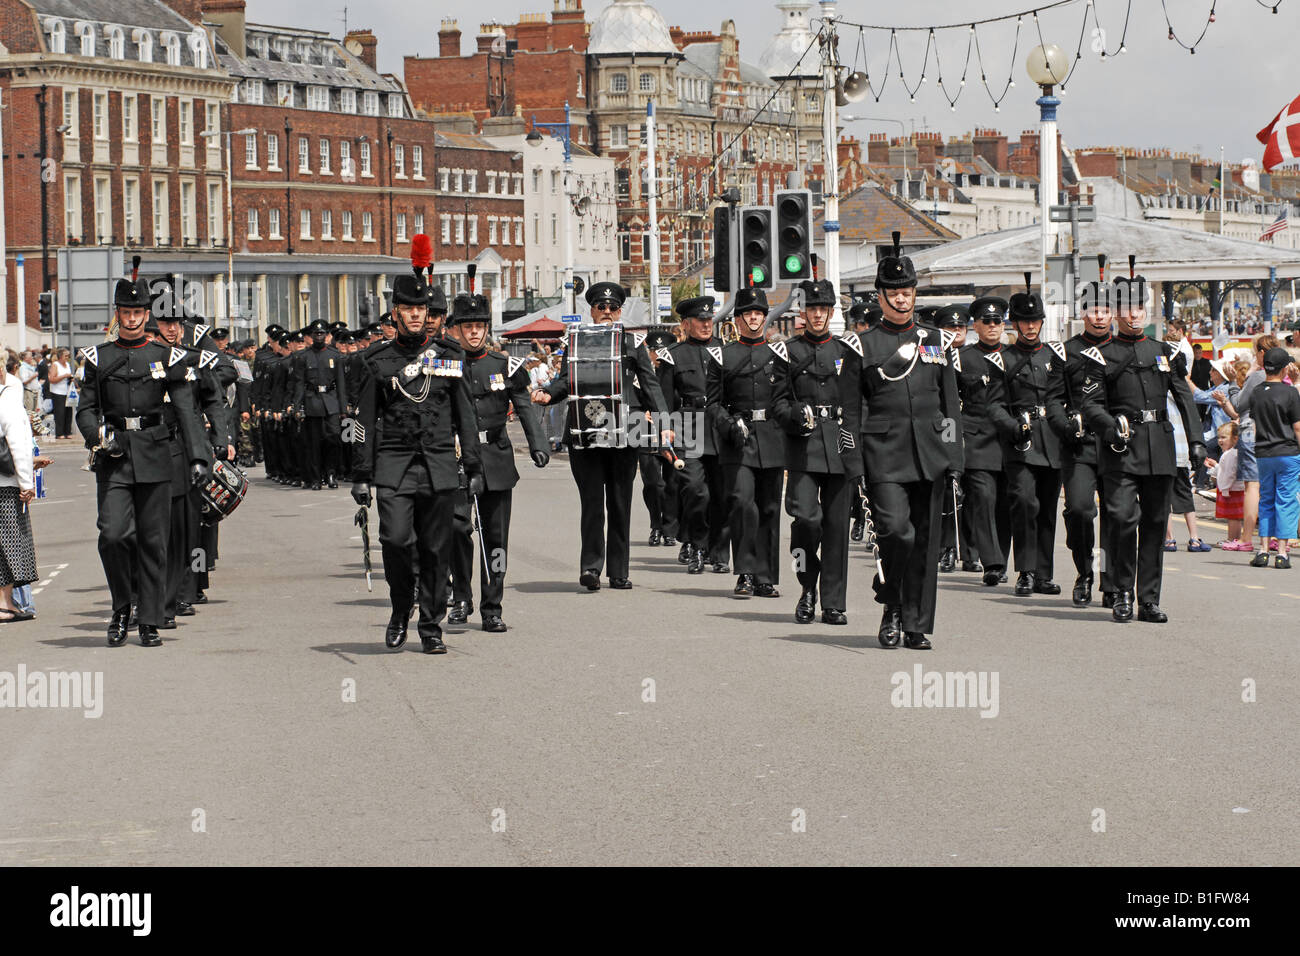 British Light Infantry Marching Band Jacket